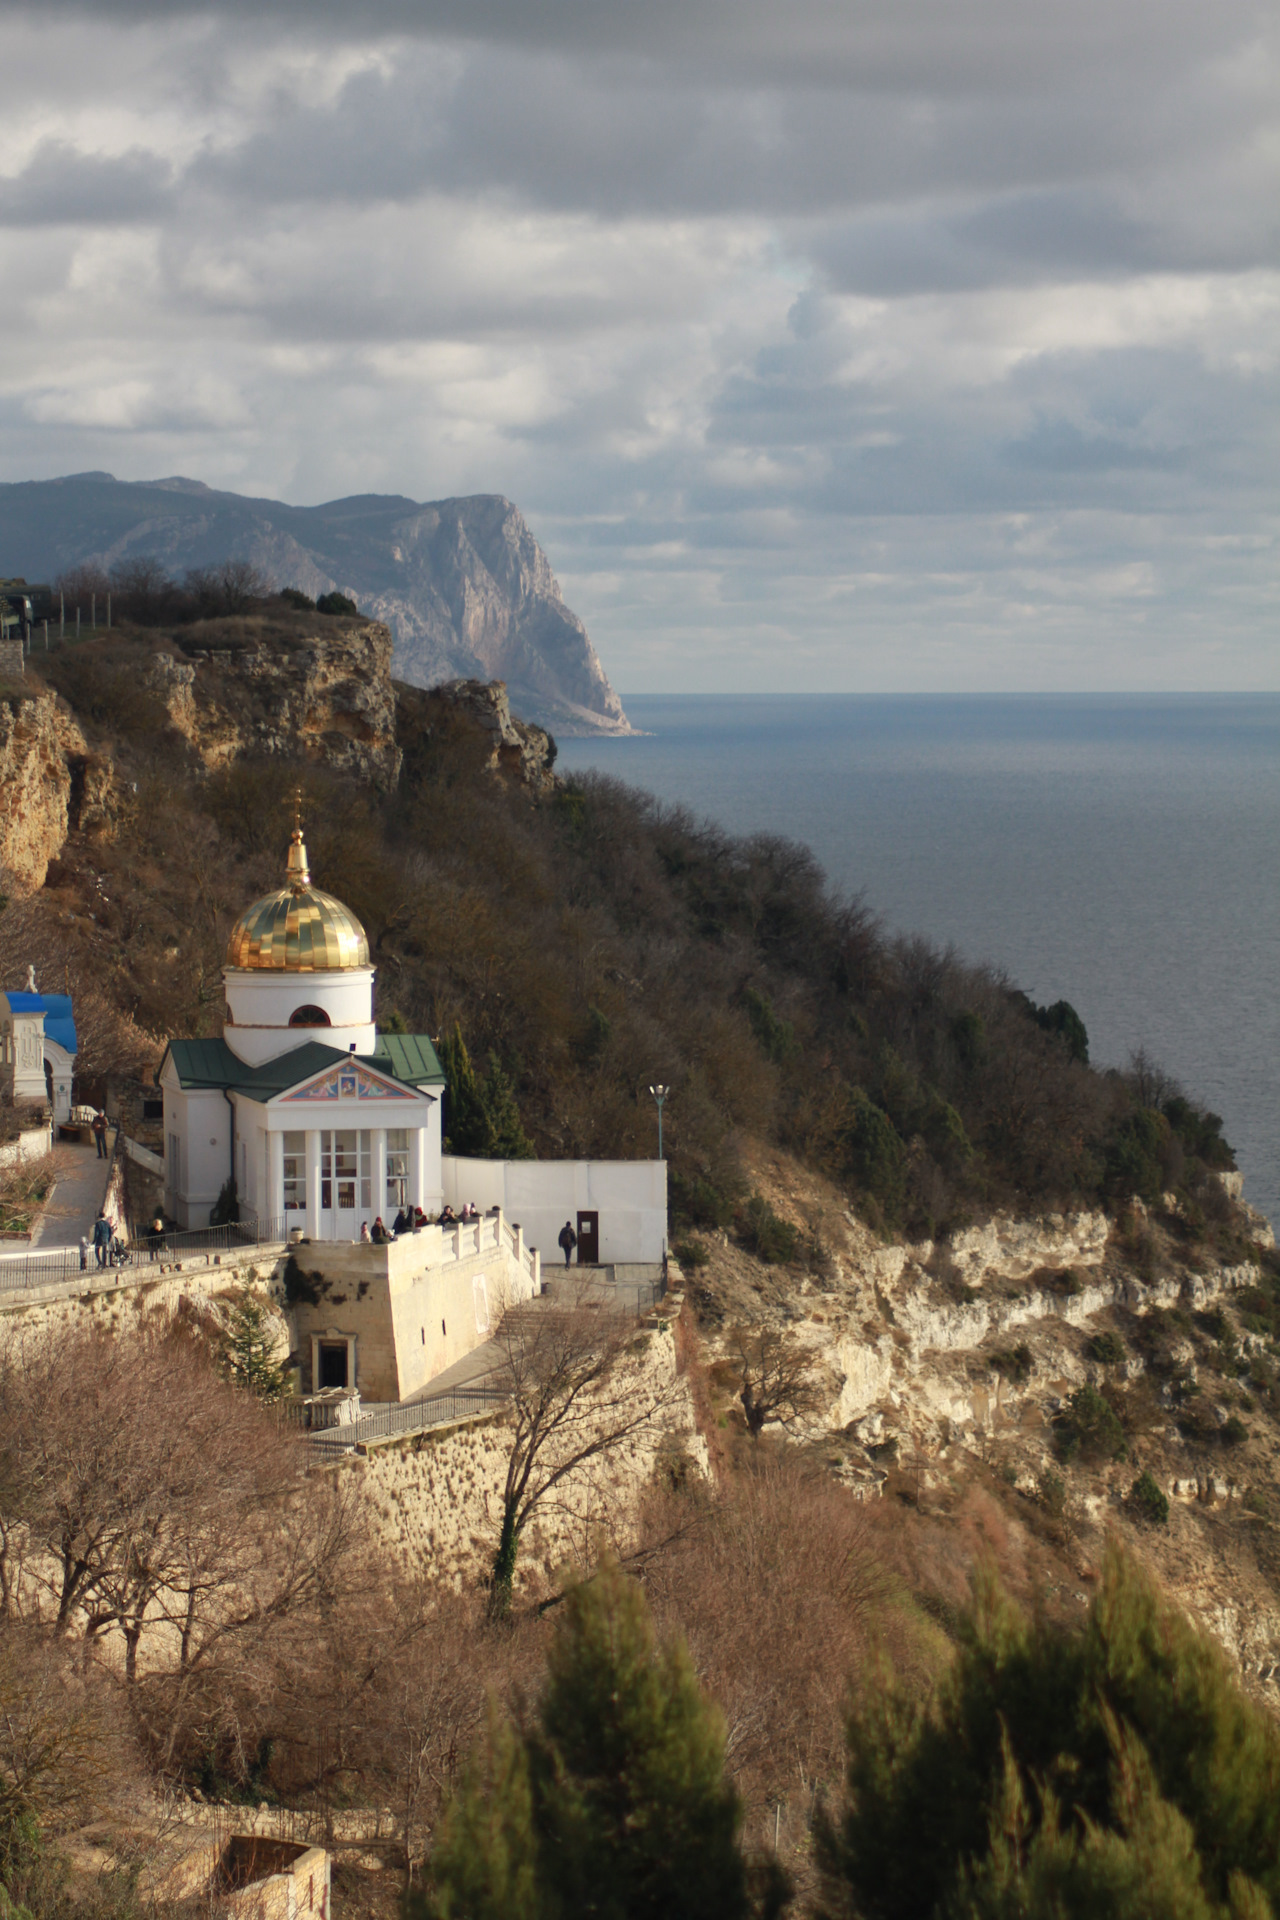 Свято георгиевский монастырь в севастополе фото